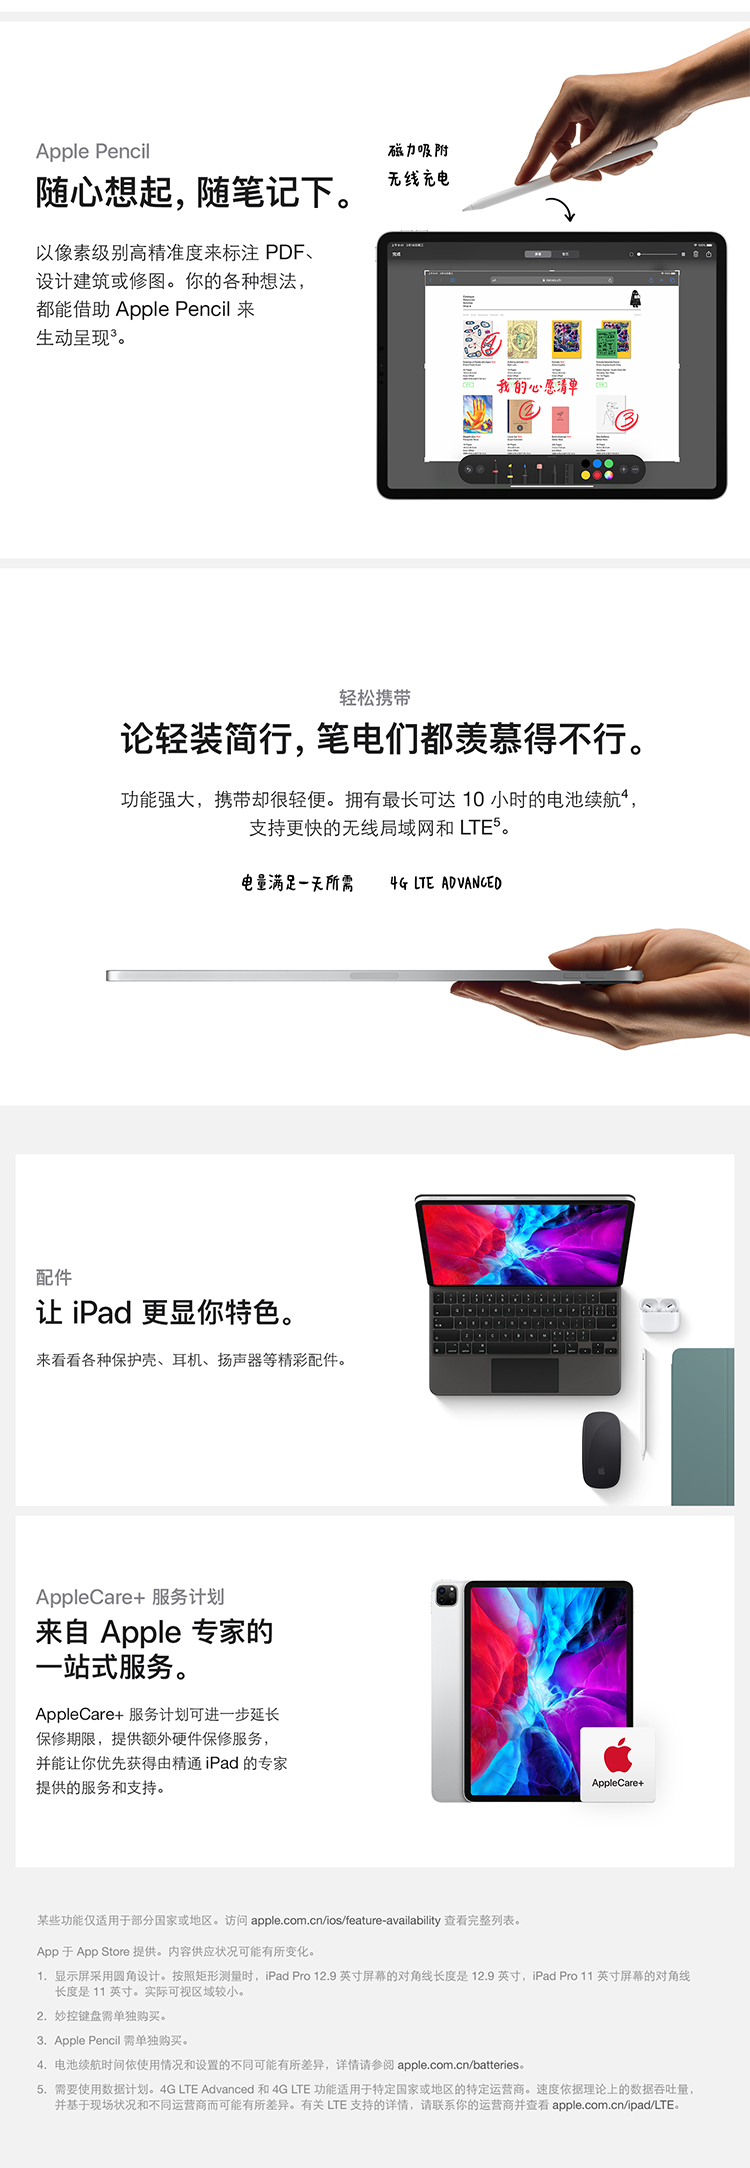 中山手机网 苹果(apple) apple ipad pro 11寸专卖